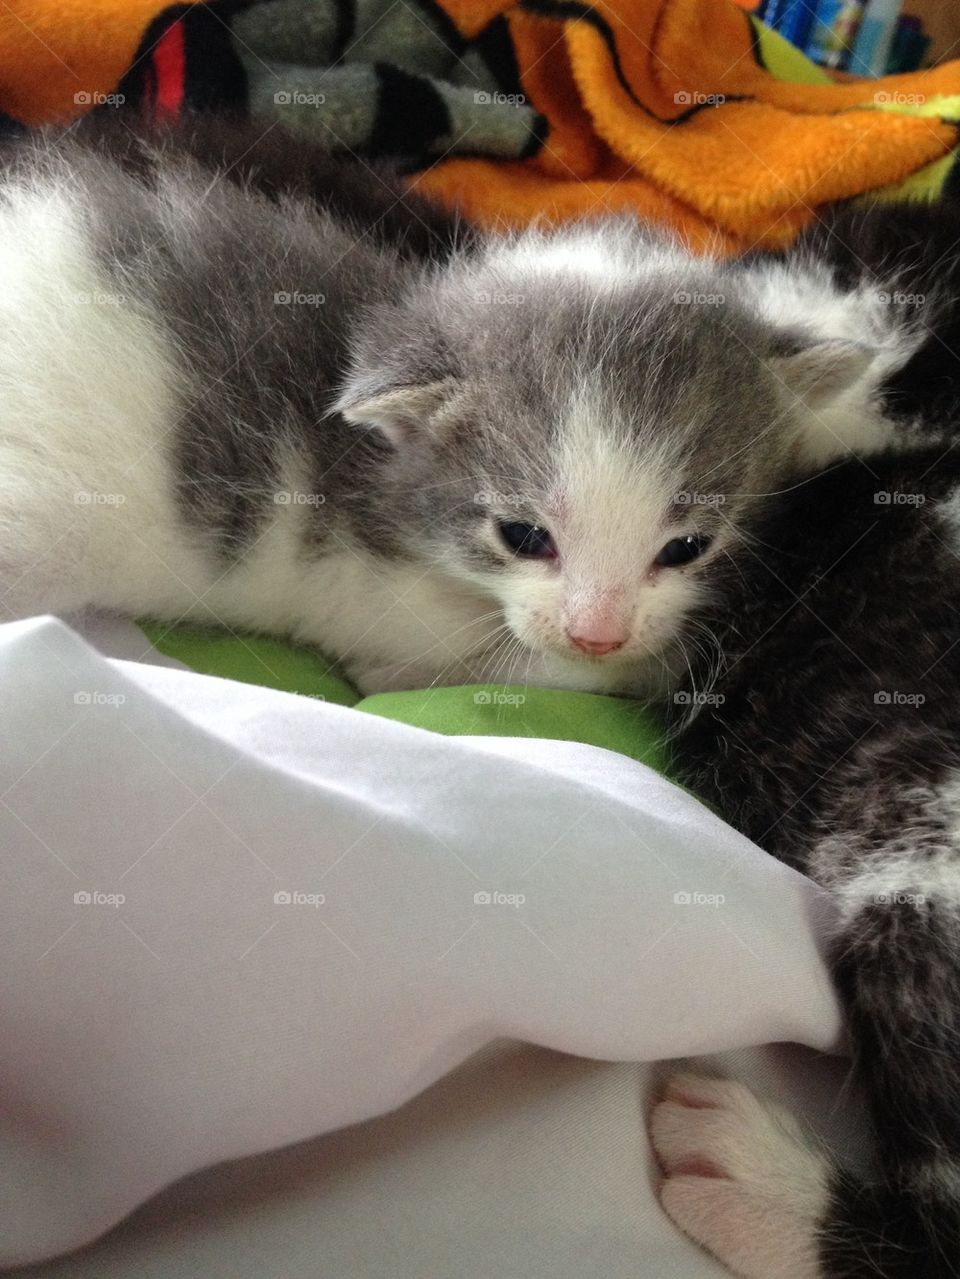 Oliver the Kitten